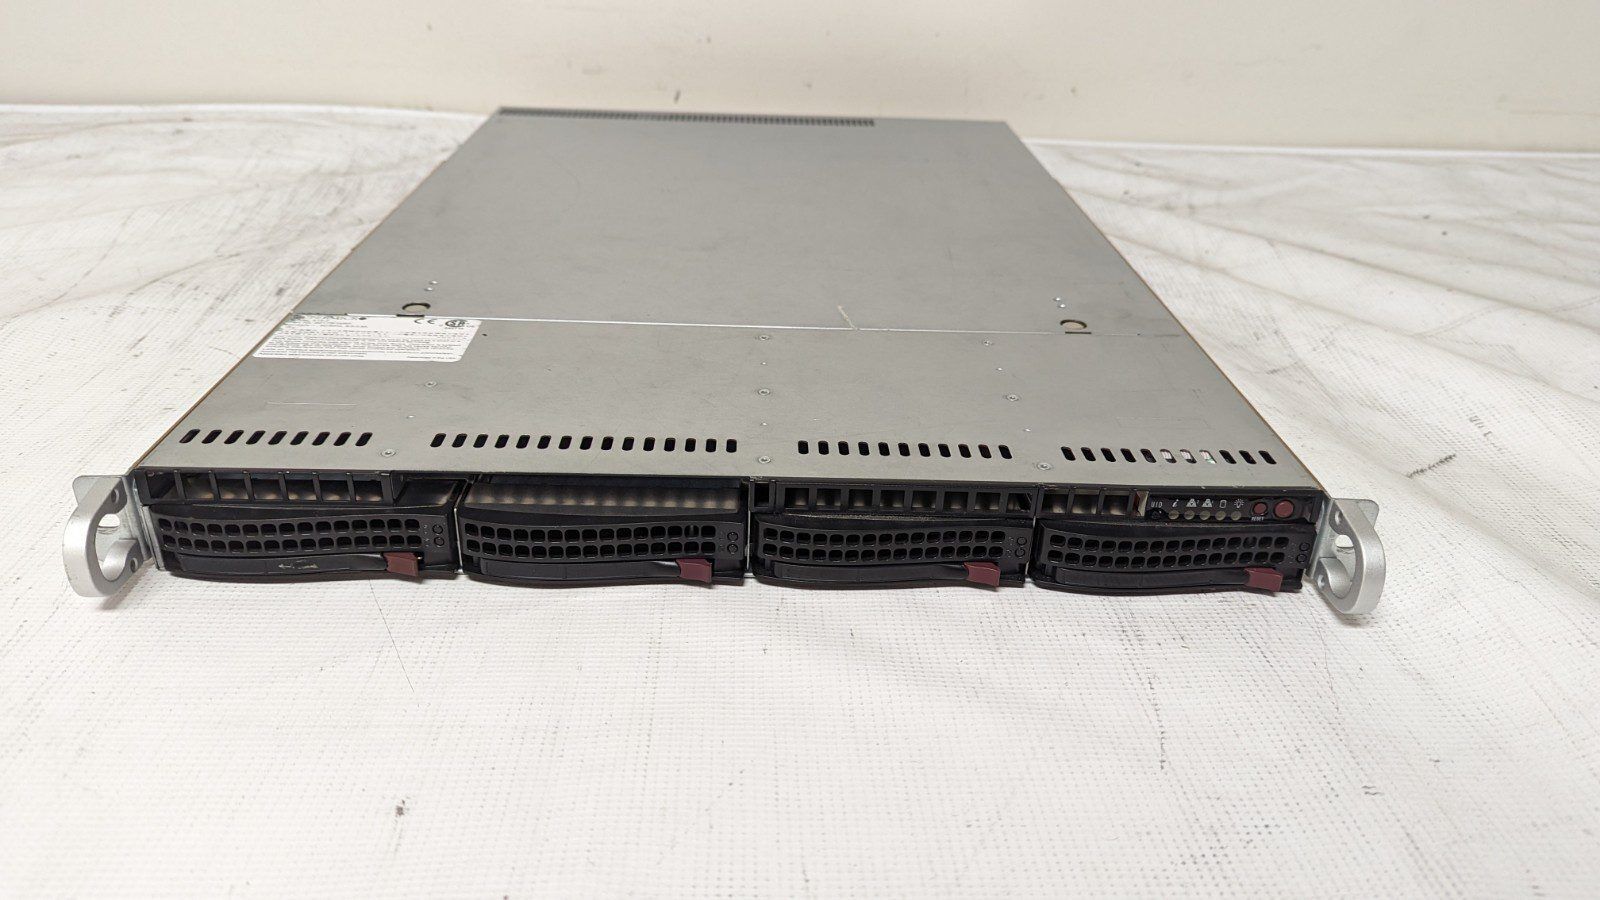 Supermicro 1U Server X9DRW-iF 2x E5-2680 2.7ghz / 128gb / 4xTrays / 2x 700w